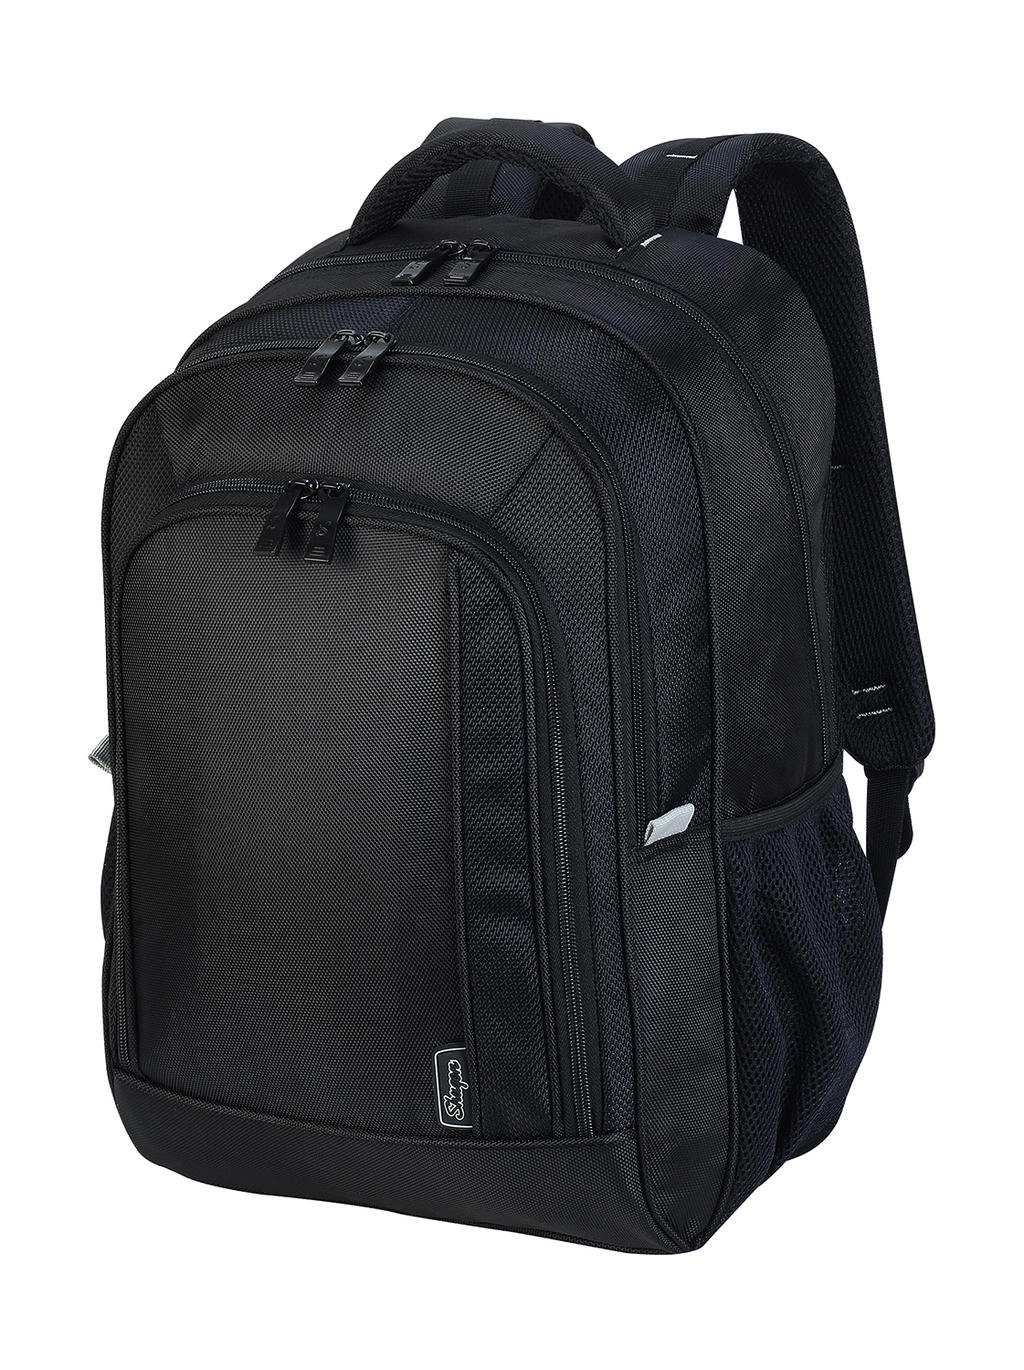 Frankfurt Smart Laptop Backpack zum Besticken und Bedrucken in der Farbe Black mit Ihren Logo, Schriftzug oder Motiv.